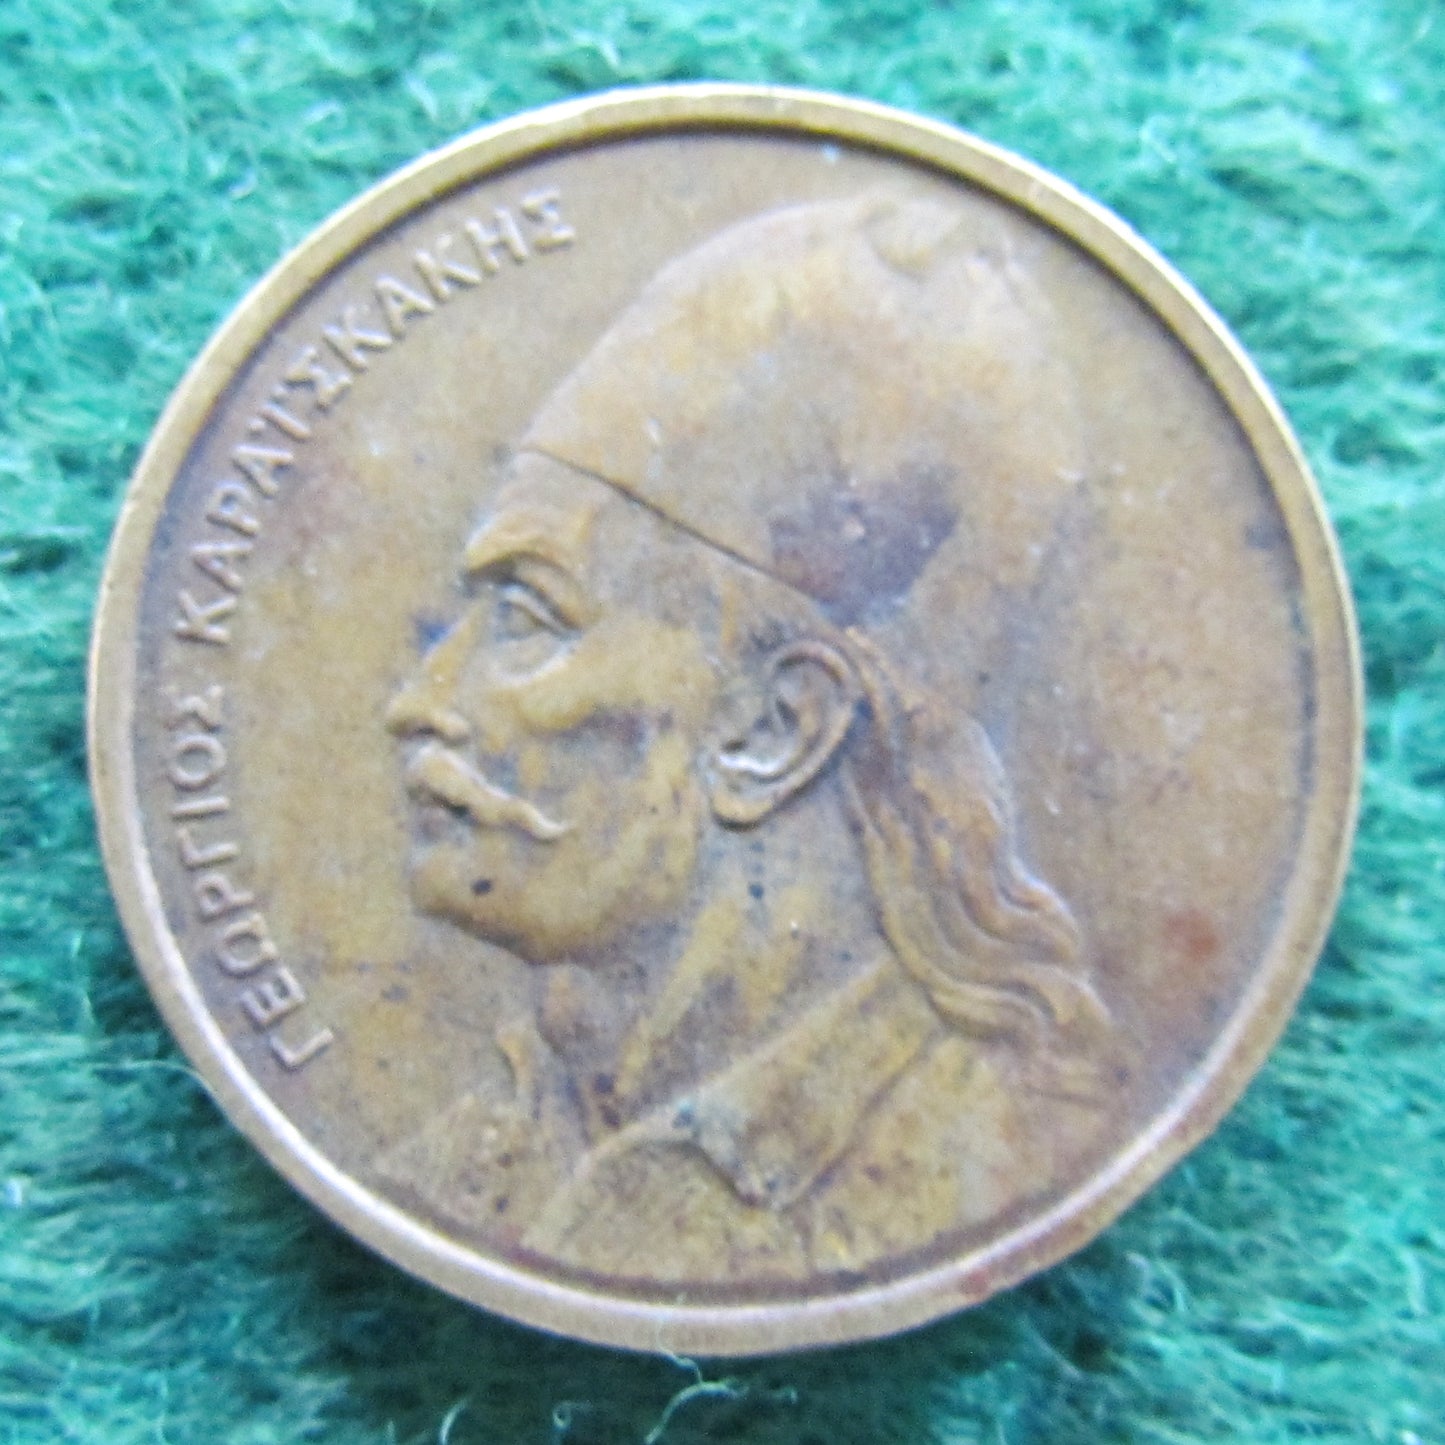 Greek 1978 2 Drachma Coin